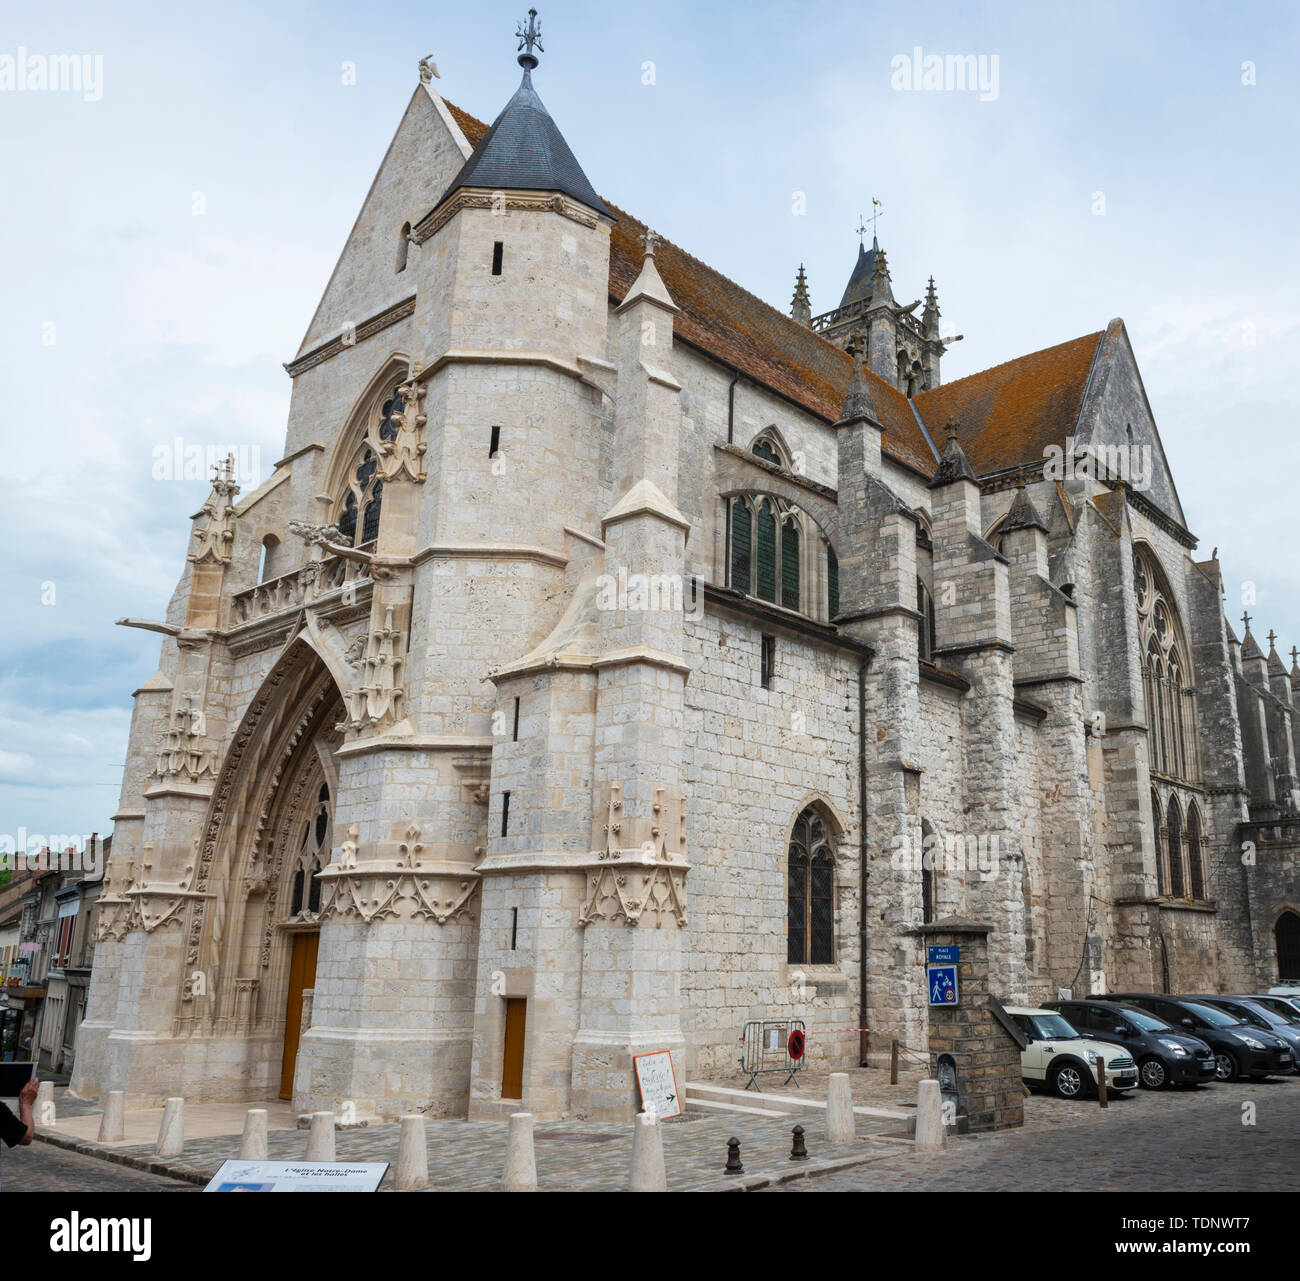 Vue extérieure de l'Eglise Notre-Dame à Moret-sur-Loing, Seine-et-Marne, Île-de-France Région du centre-nord de la France Banque D'Images